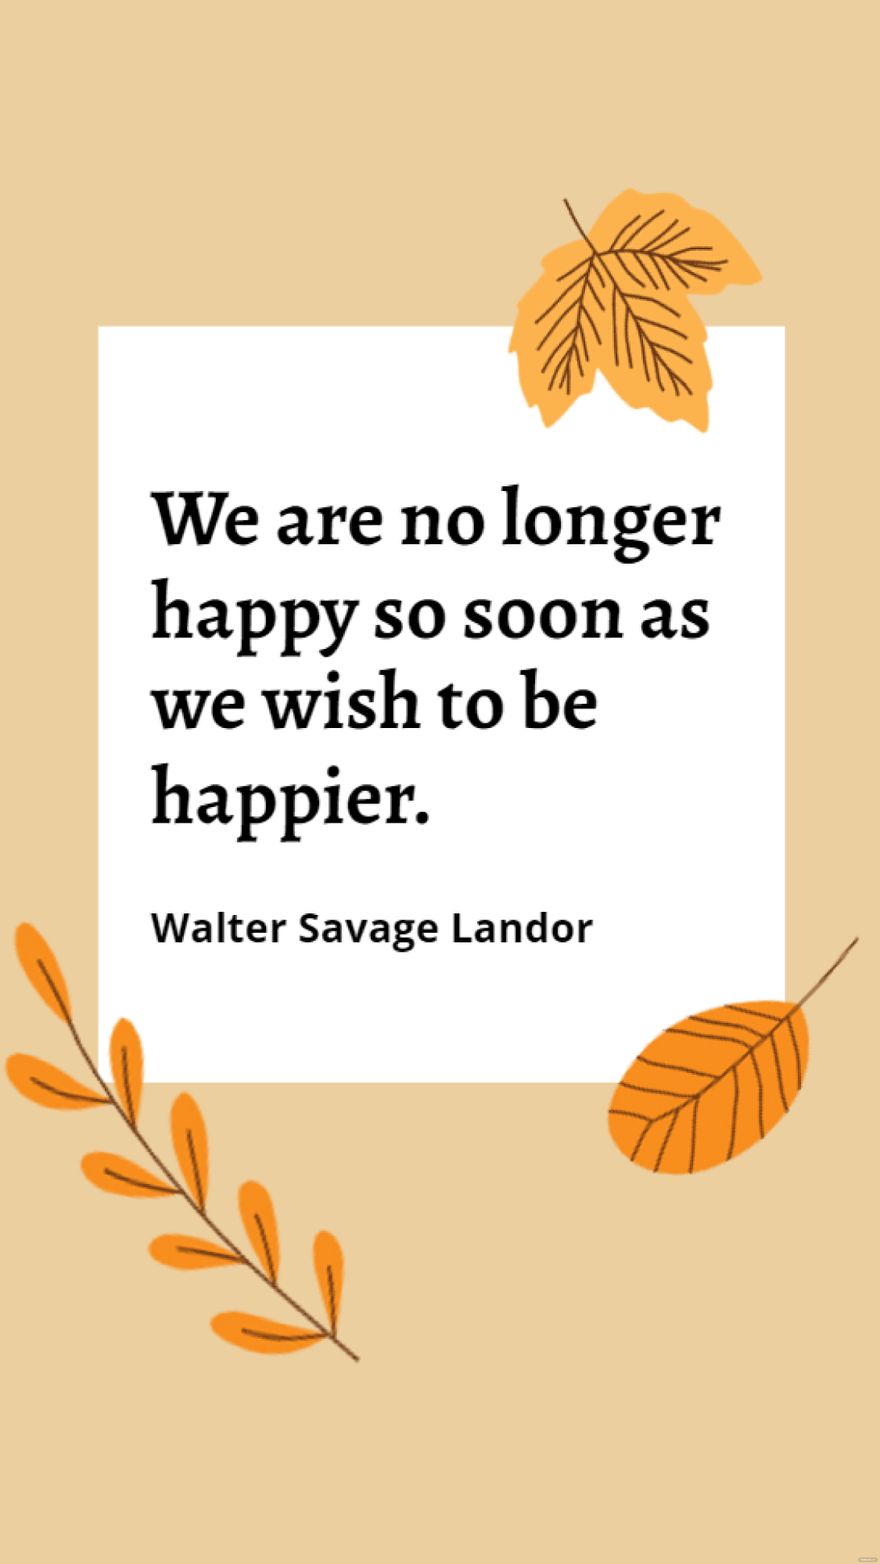 Walter Savage Landor - We are no longer happy so soon as we wish to be happier.